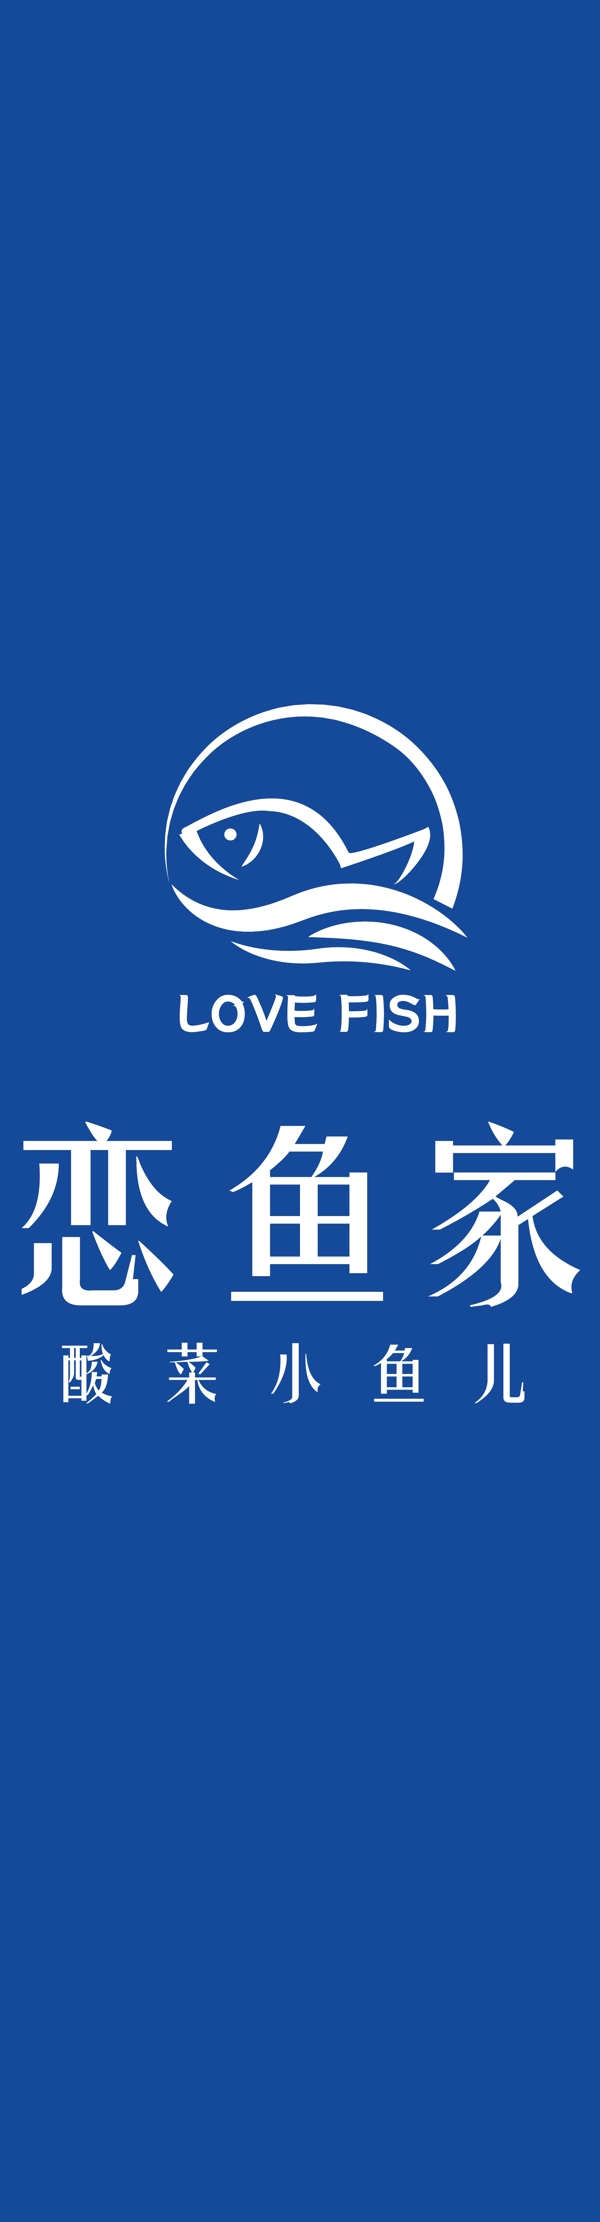 恋鱼家logo